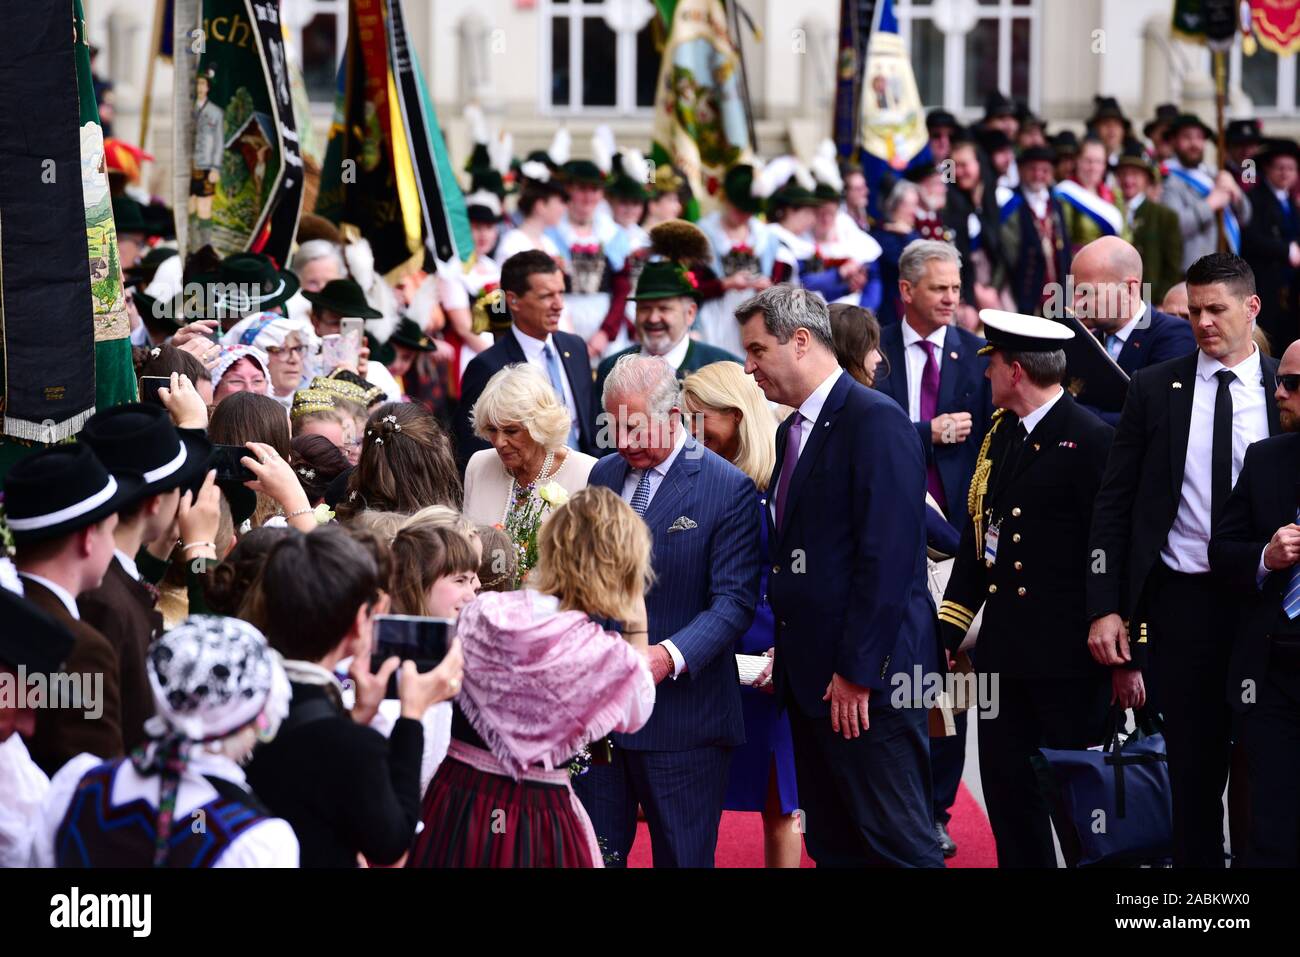 Le Prince Charles et la duchesse Camilla visiter la capitale nationale Munich dans le cadre d'un voyage de quatre jours en Allemagne. La photo montre la famille royale britannique, accompagné par le Premier Ministre bavarois Markus Söder (à droite) et son épouse Karin sur le tapis rouge à Max-Joseph-Platz. [Traduction automatique] Banque D'Images